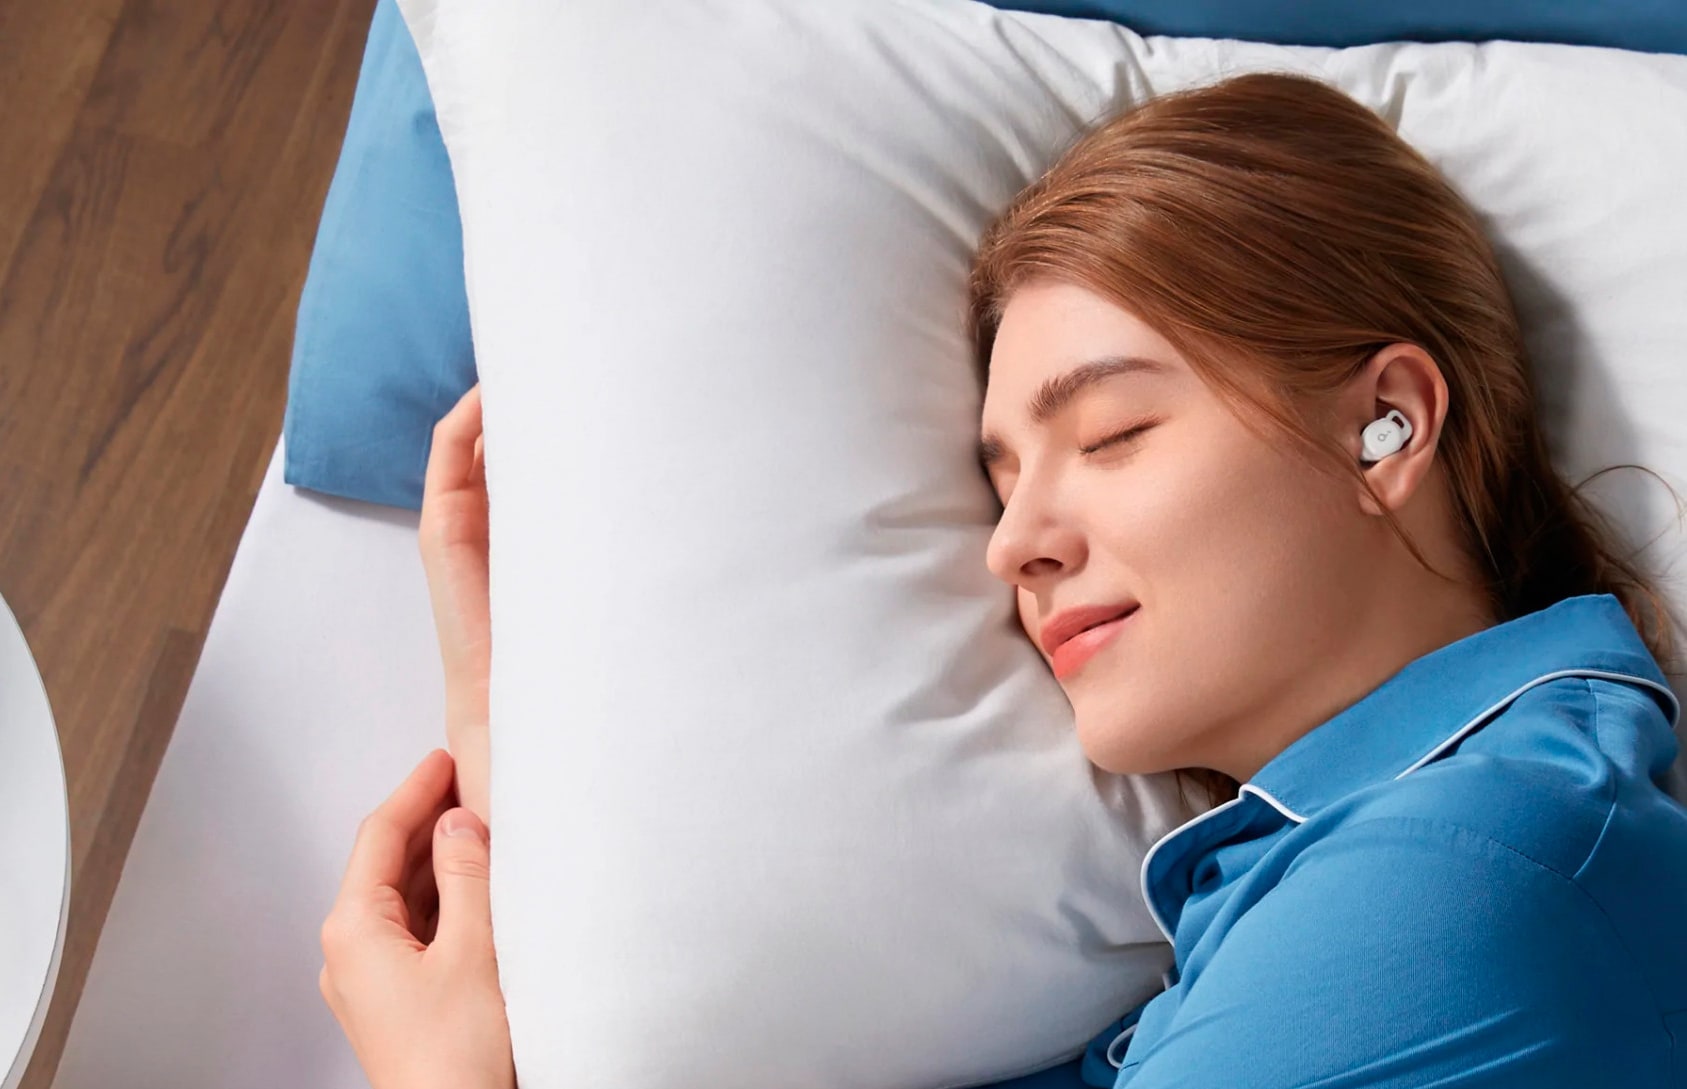 Anker випустила навушники Soundcore Sleep A10 з функцією моніторингу якості сну